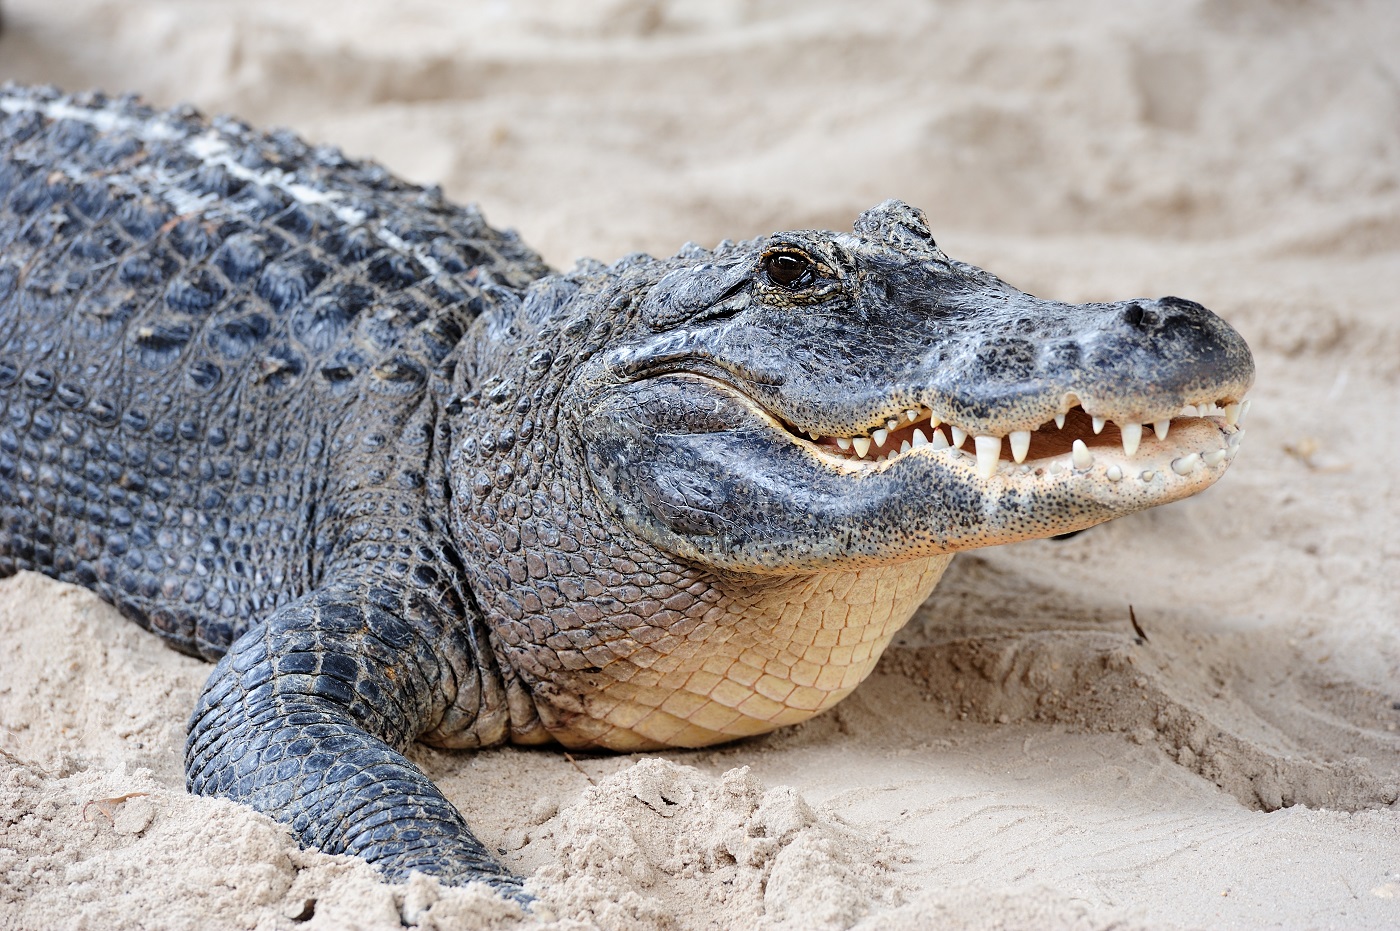 Meghalt a férfi, aki egy krokodillal próbált szexelni